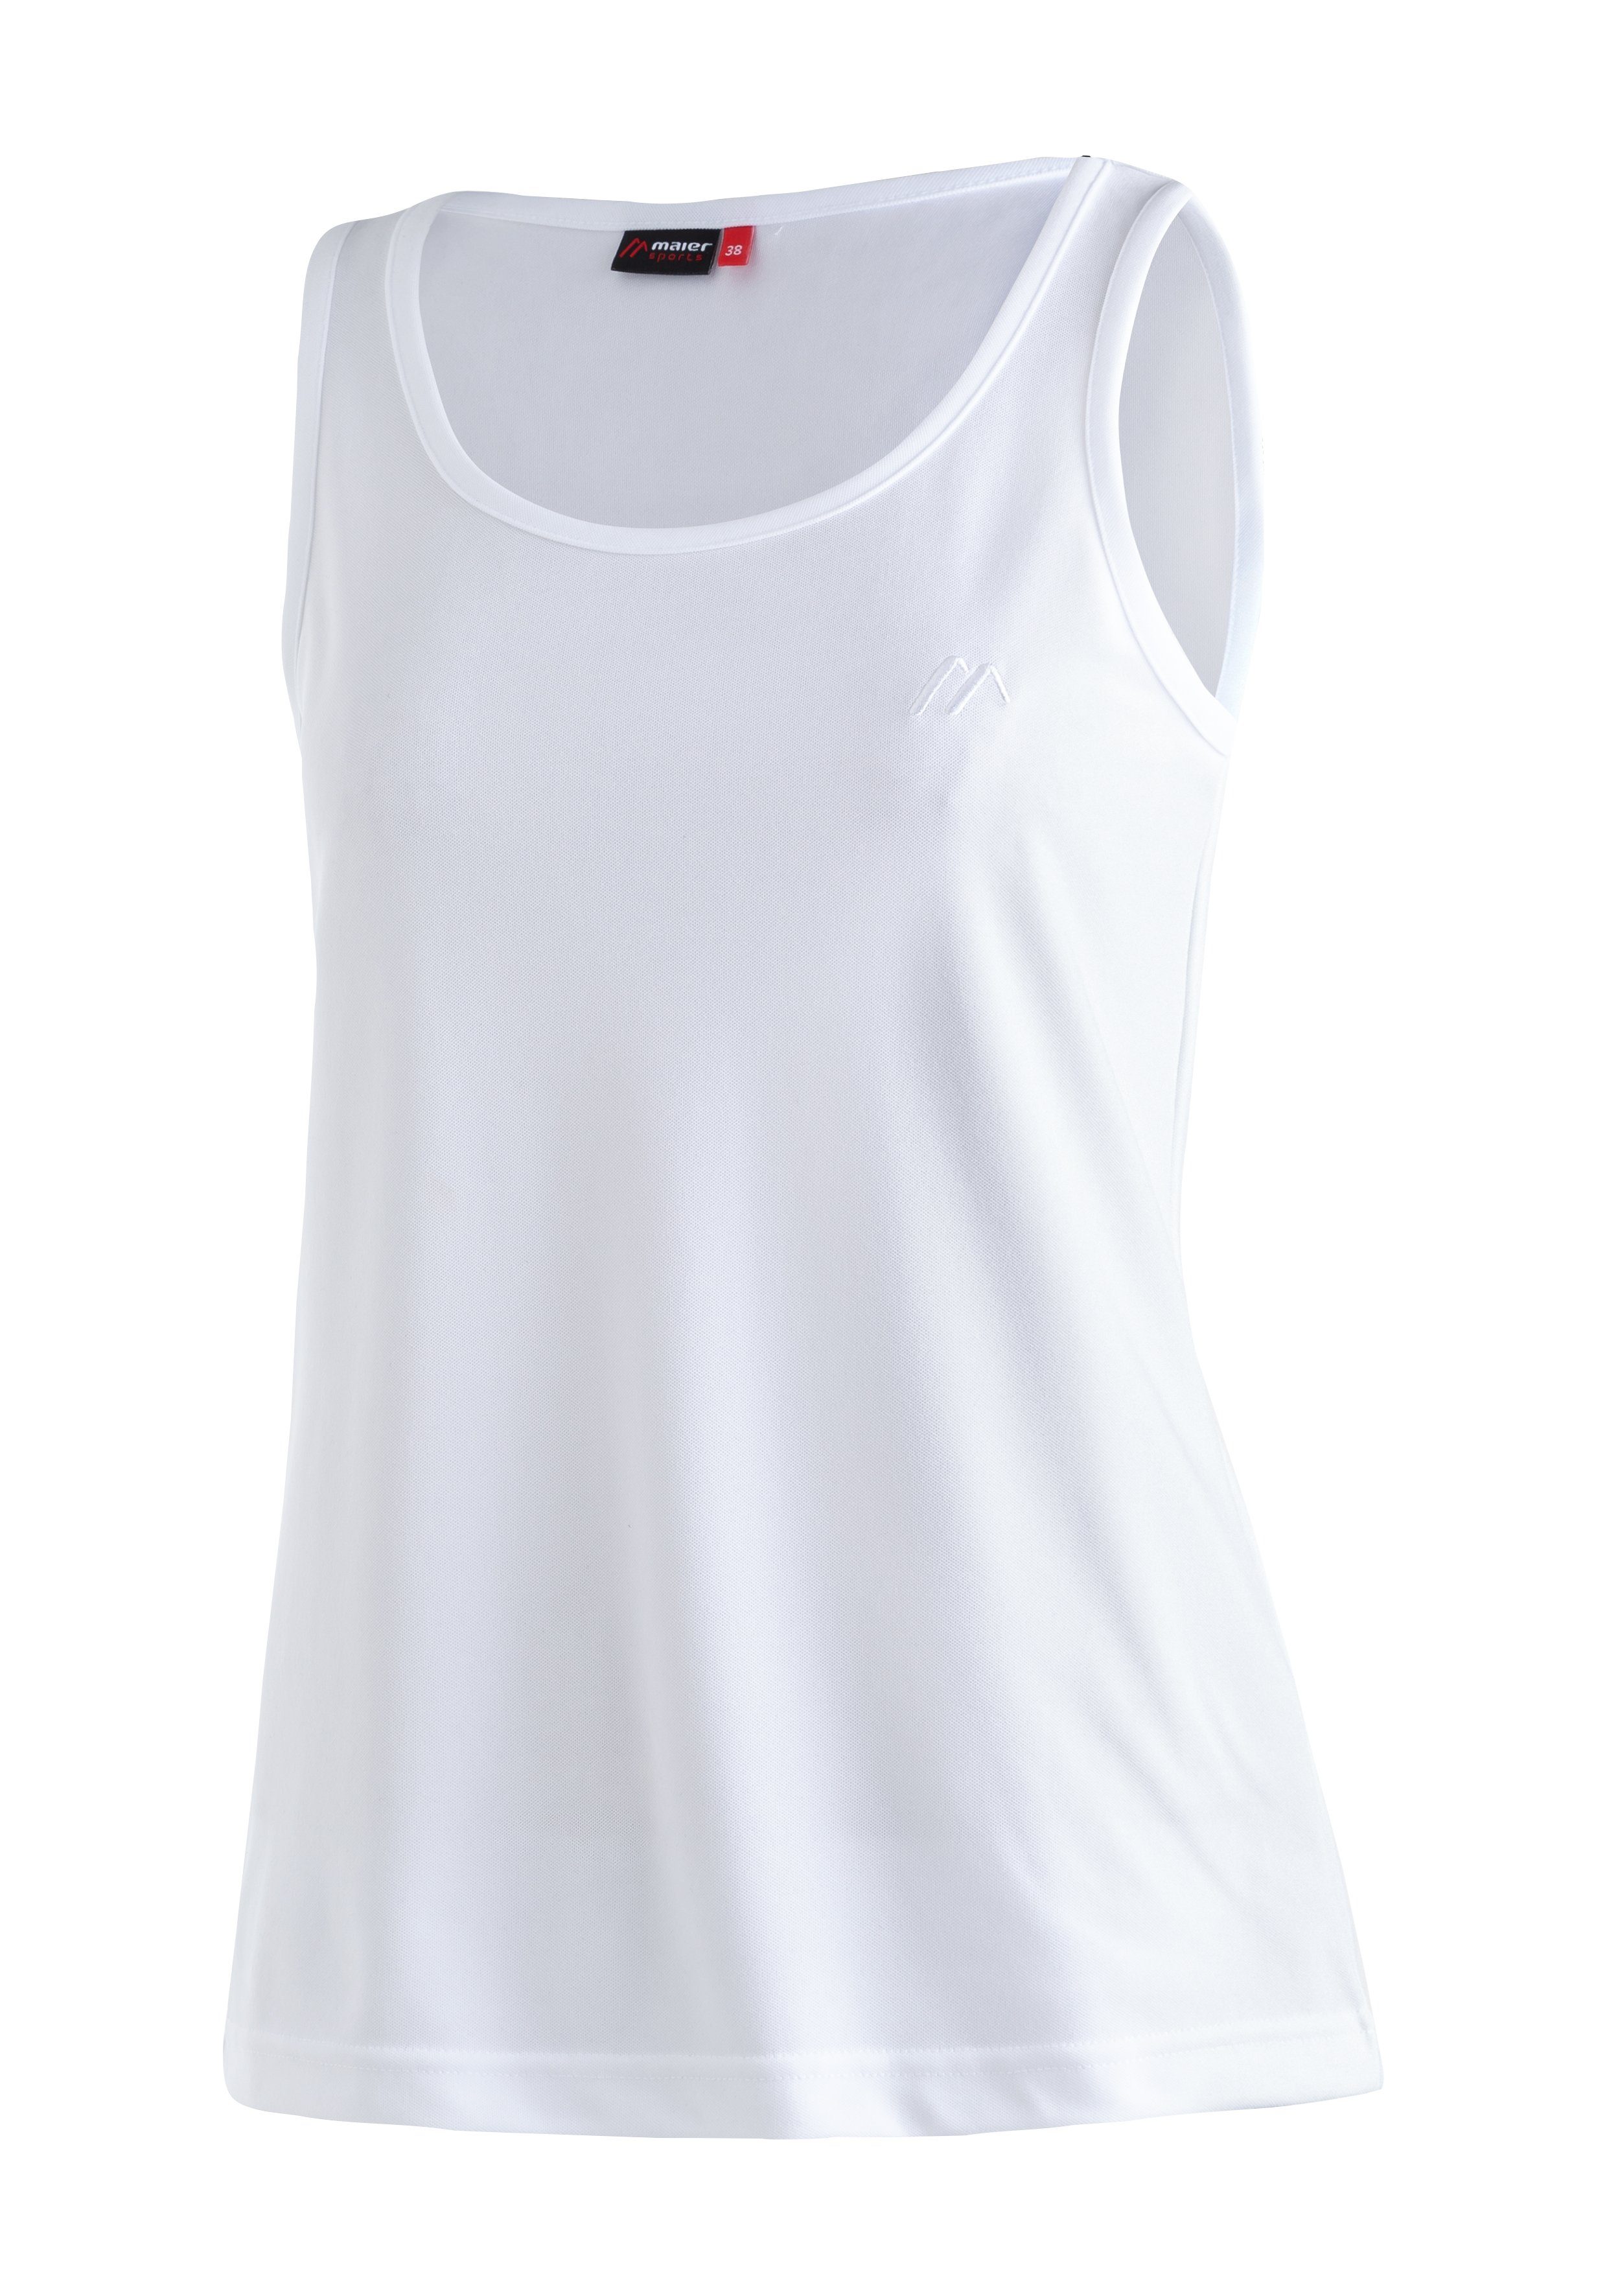 maier sports functioneel shirt petra damestanktop voor sport en outdooractiviteiten, mouwloos shirt wit